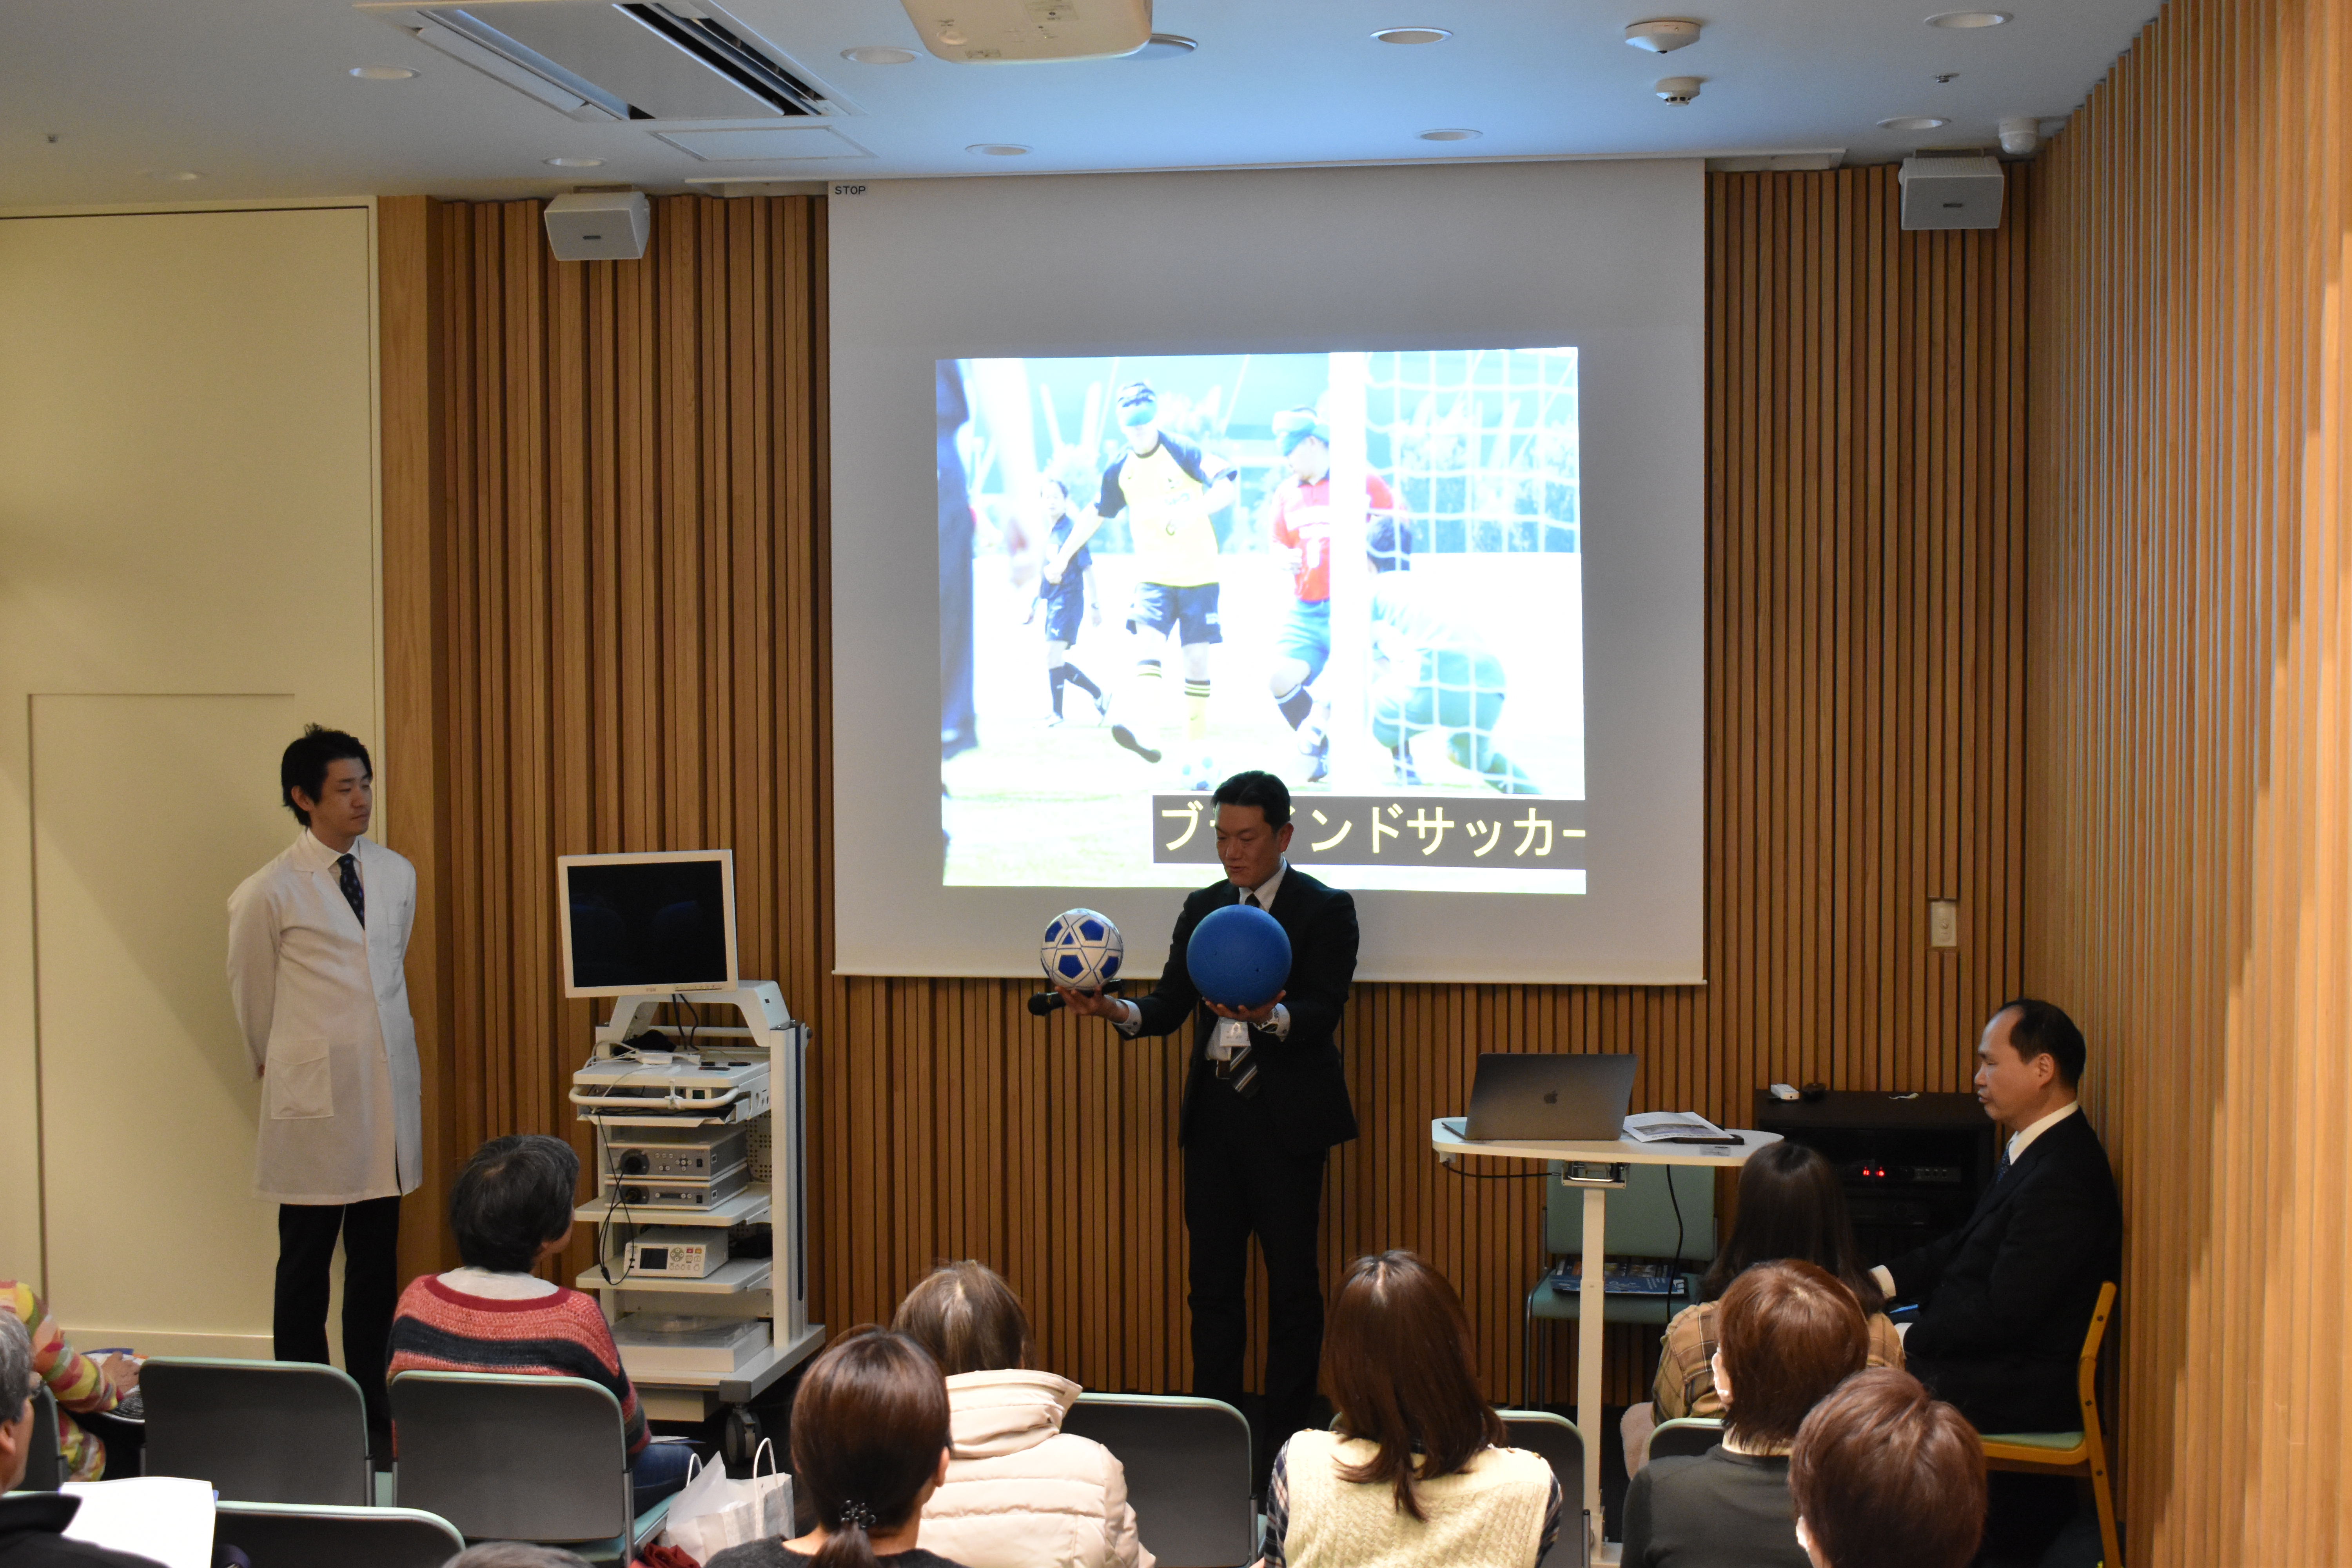 北海道札幌視覚支援学校の先生によるセミナーの様子